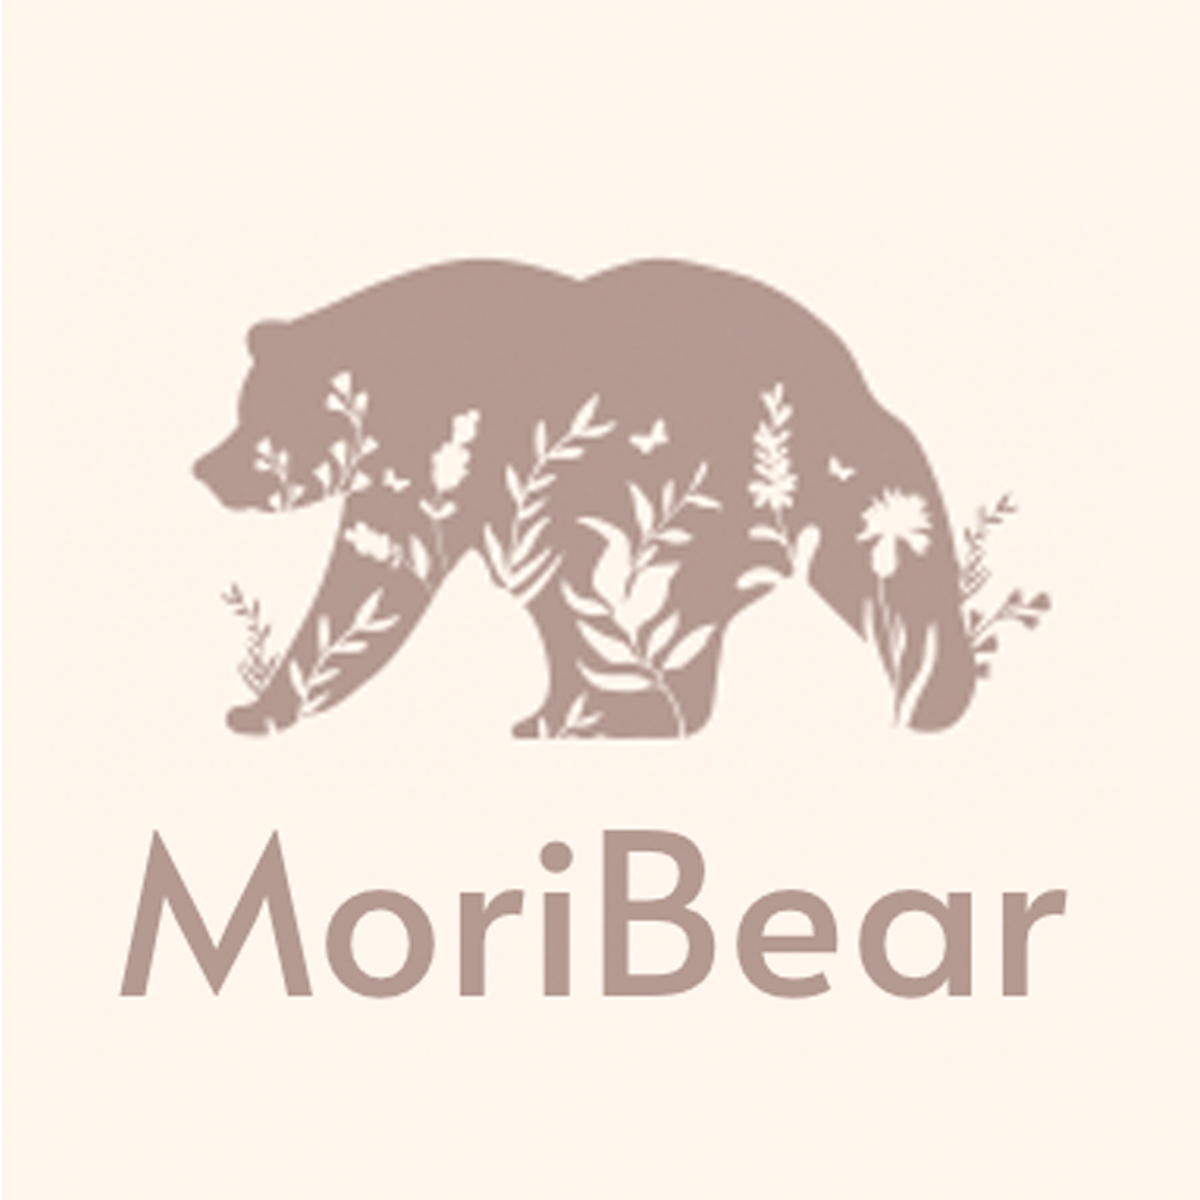 Moribear